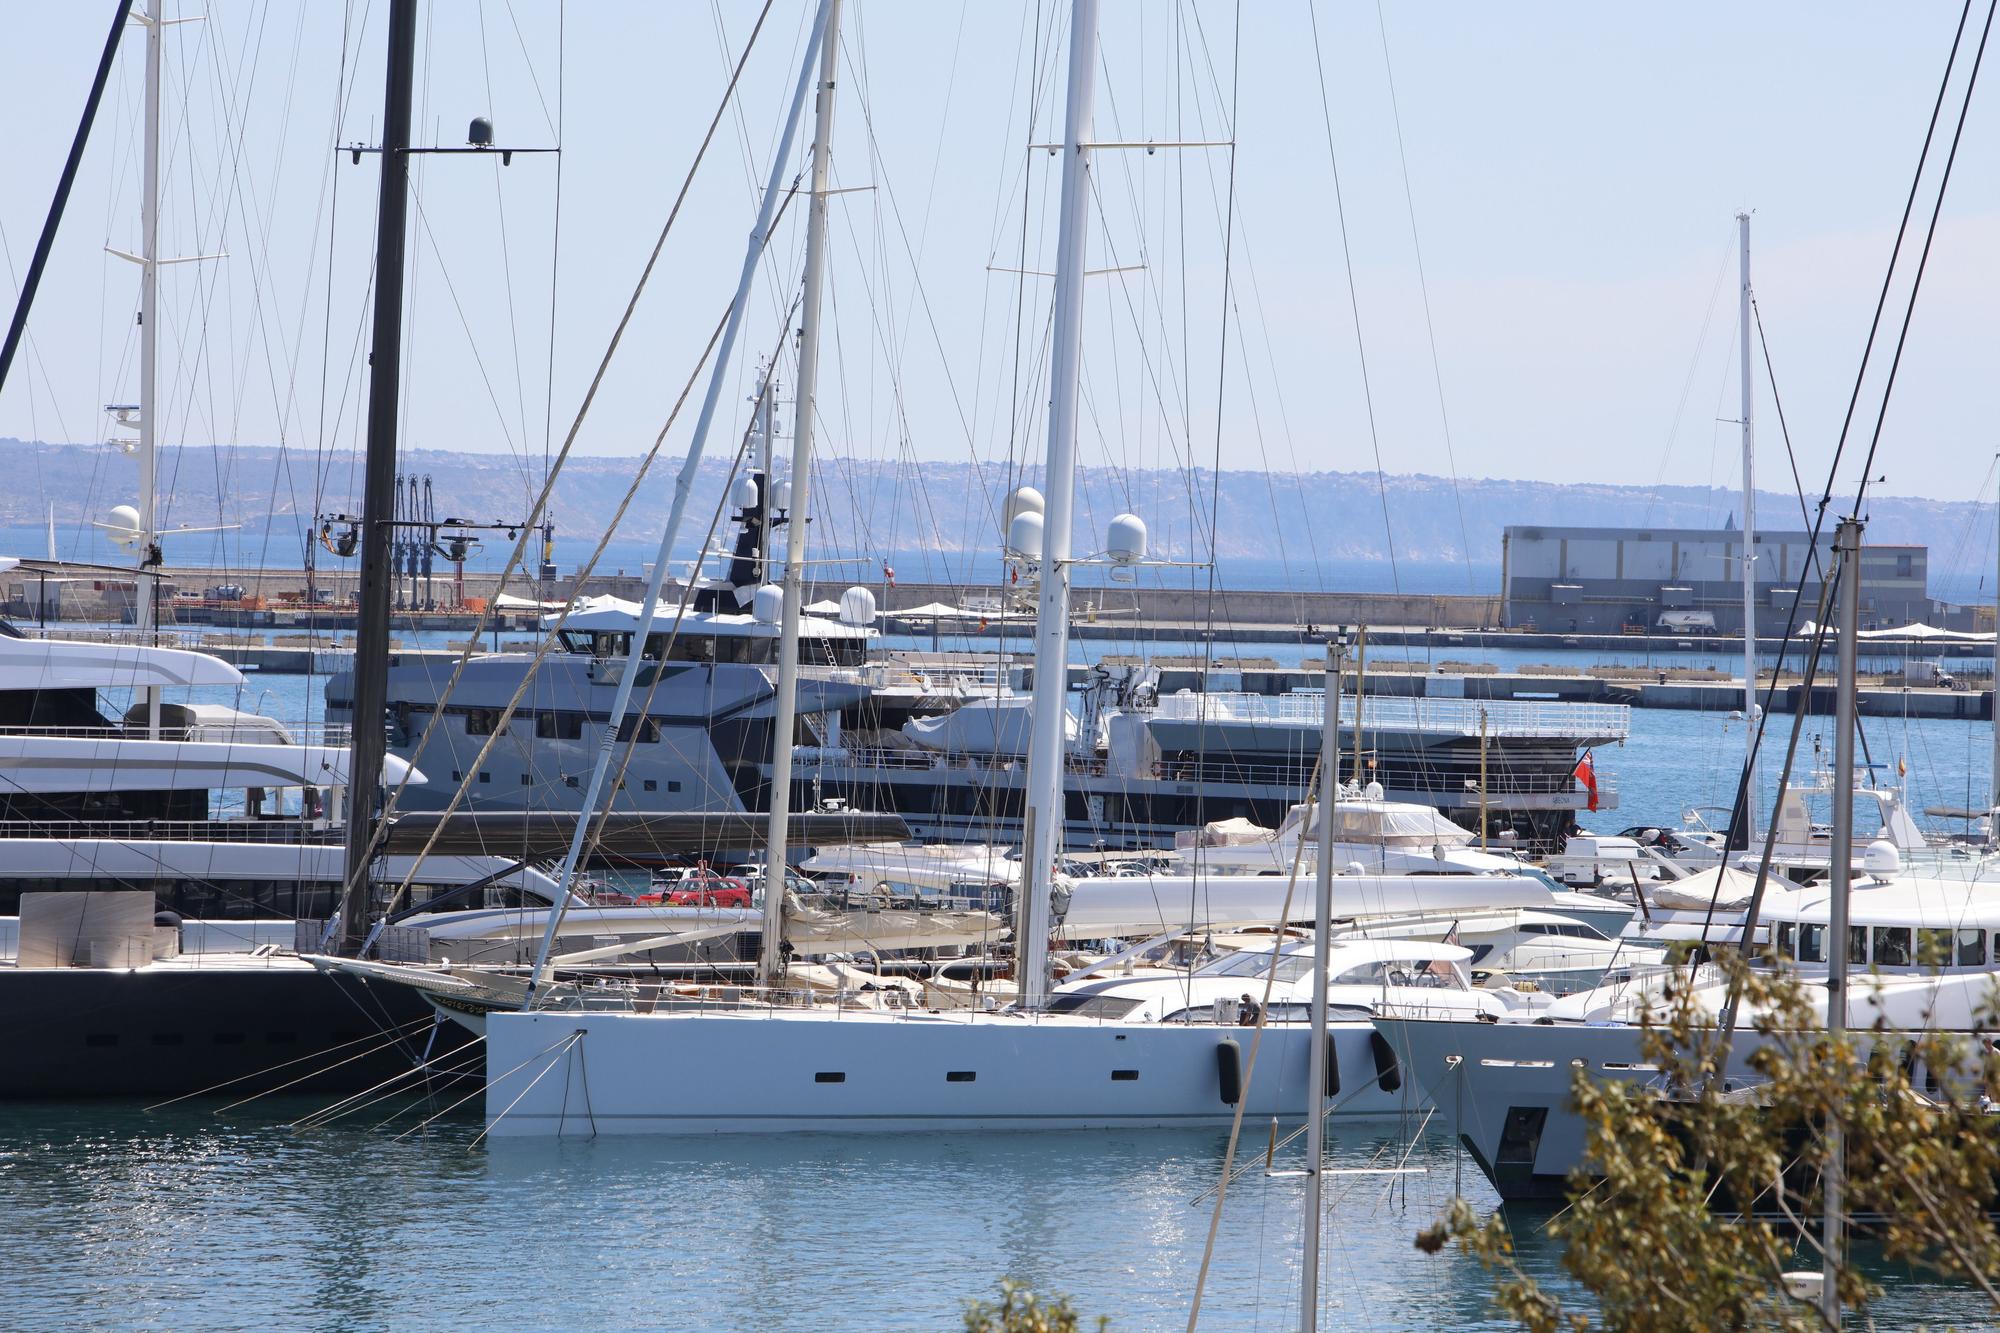 Das 76-Meter-Beiboot "Abeona" von Jeff Bezos am Hafen von Palma de Mallorca